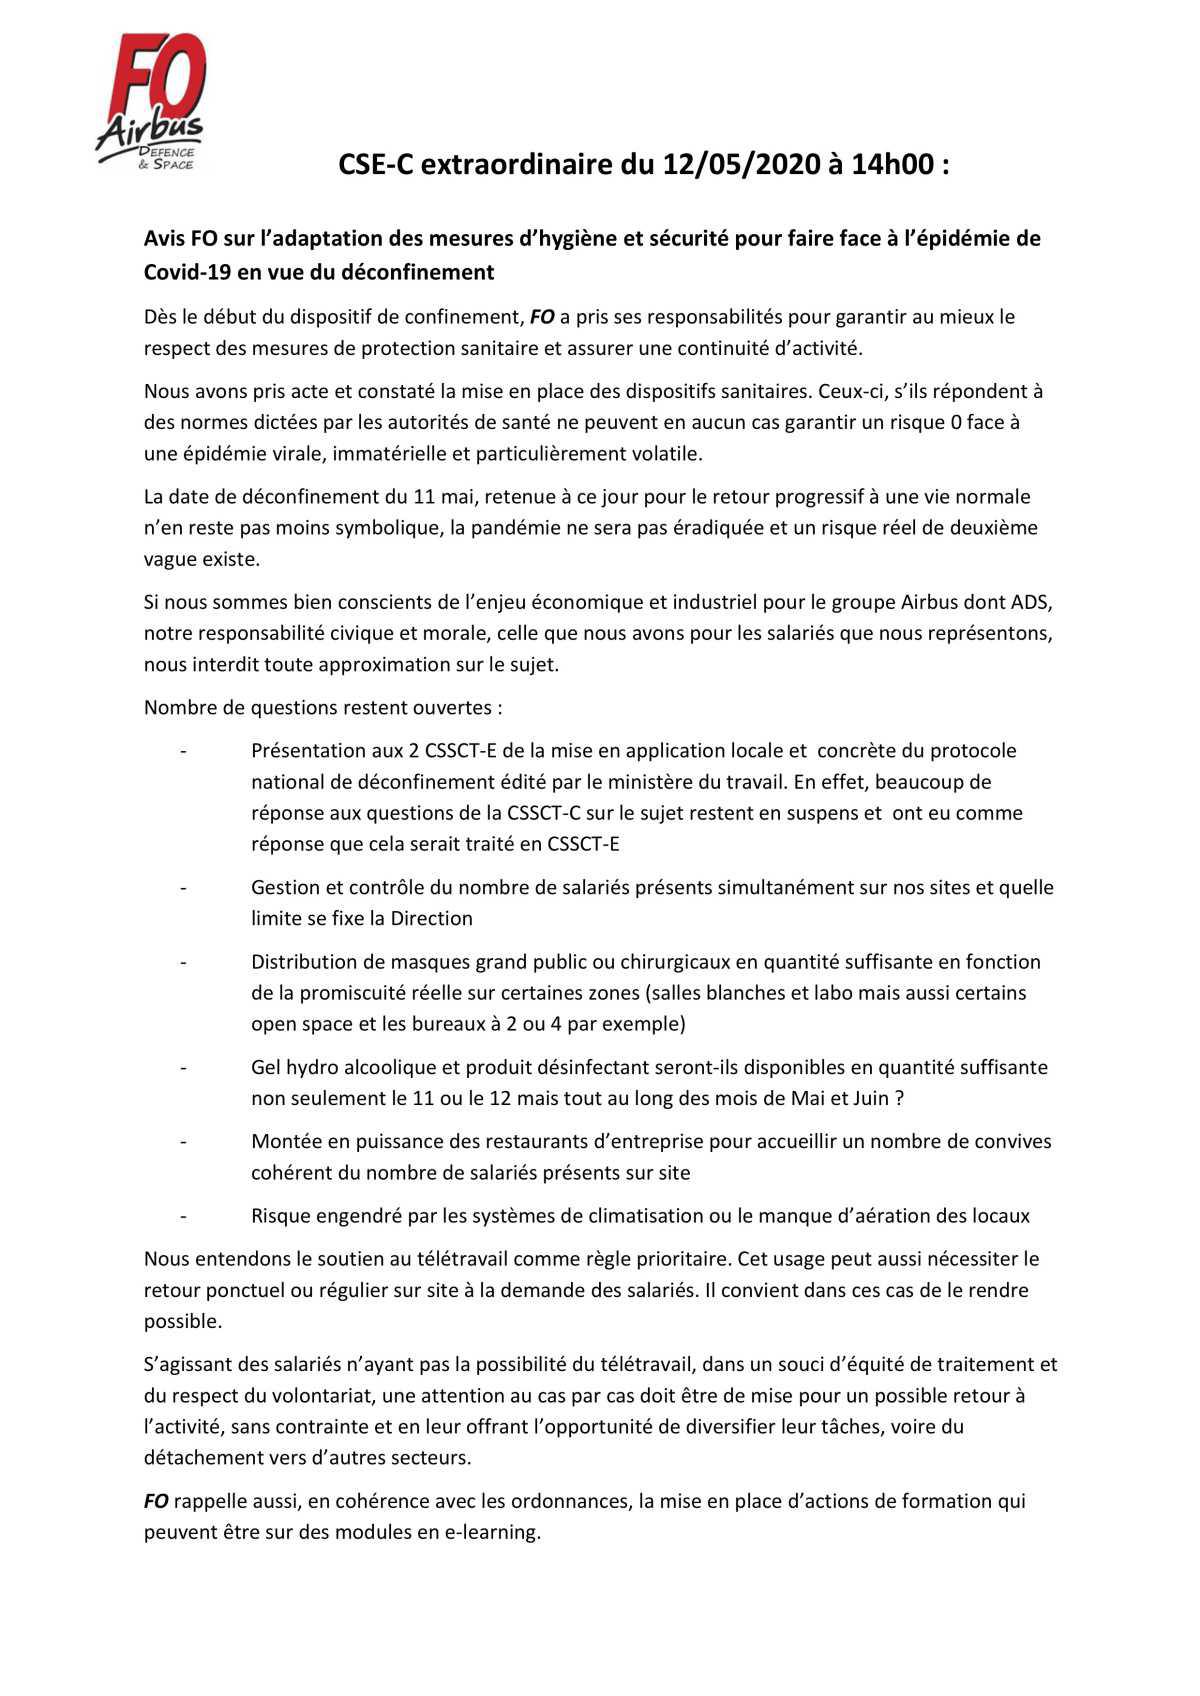 Avis FO CSE-C Mesures déconfinement 12/05/2020